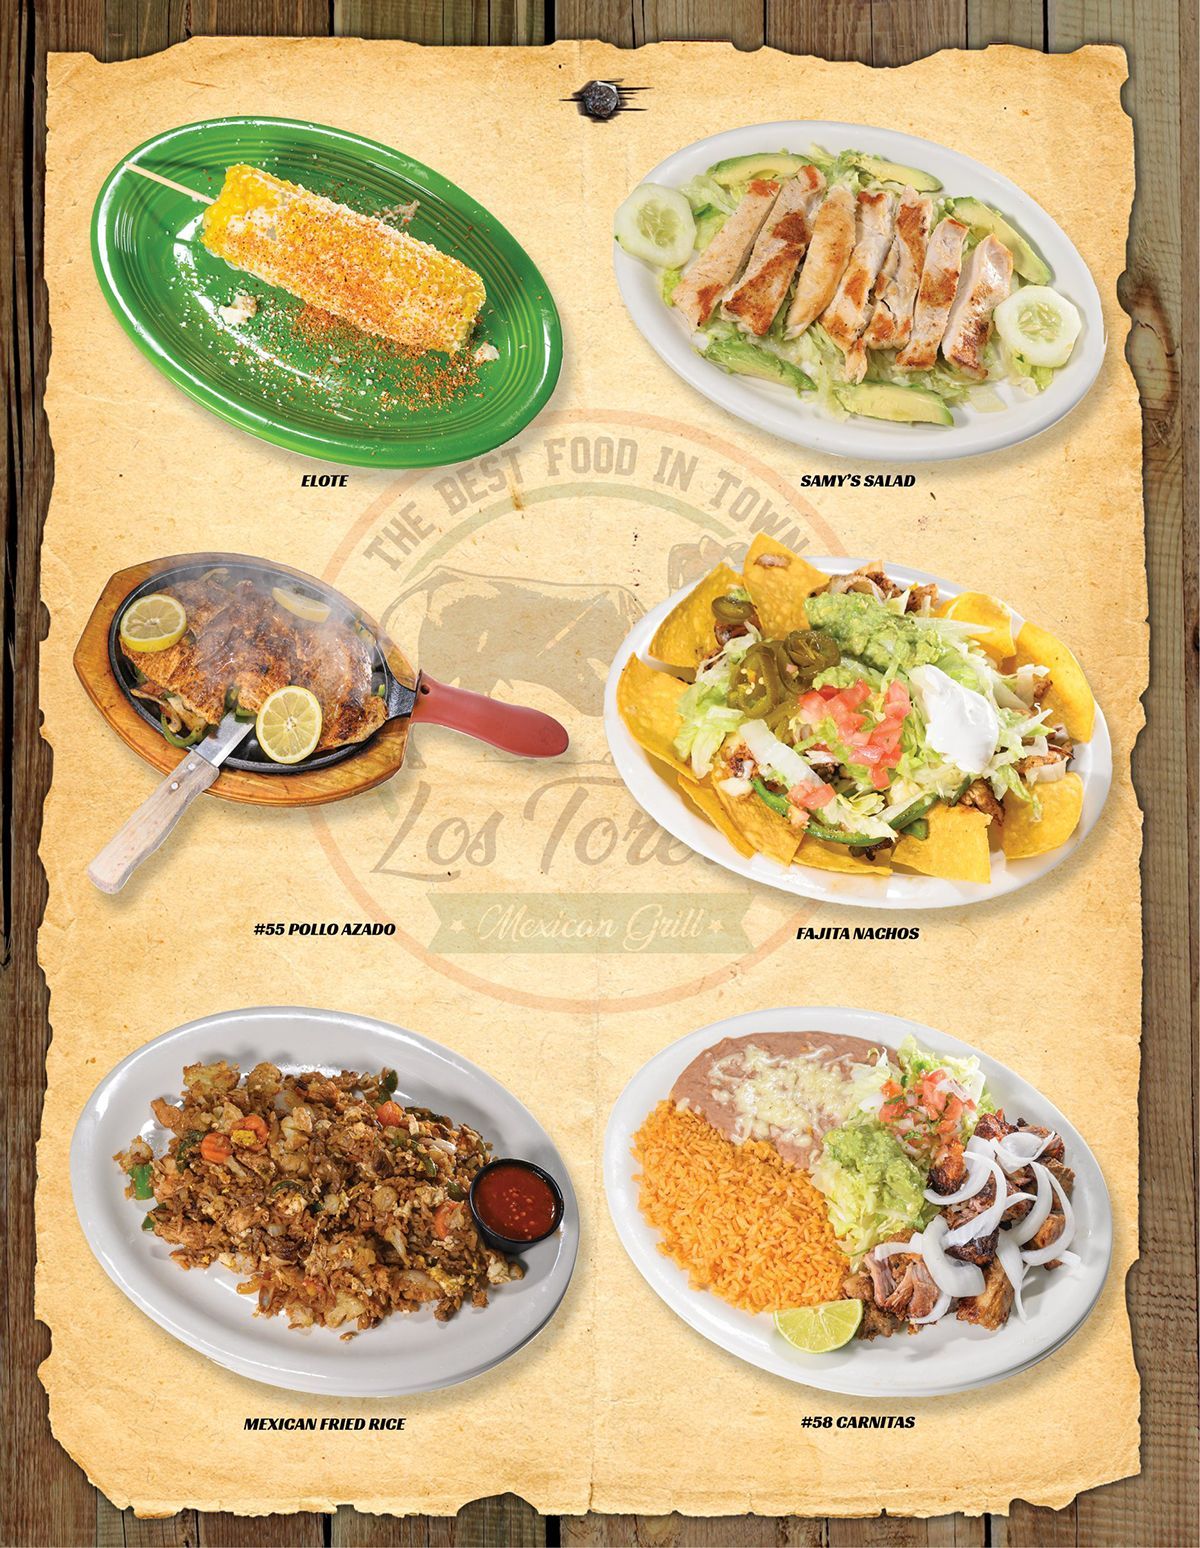 Los Toreros Mexican Grill Prattville, AL - Menu - Page 3